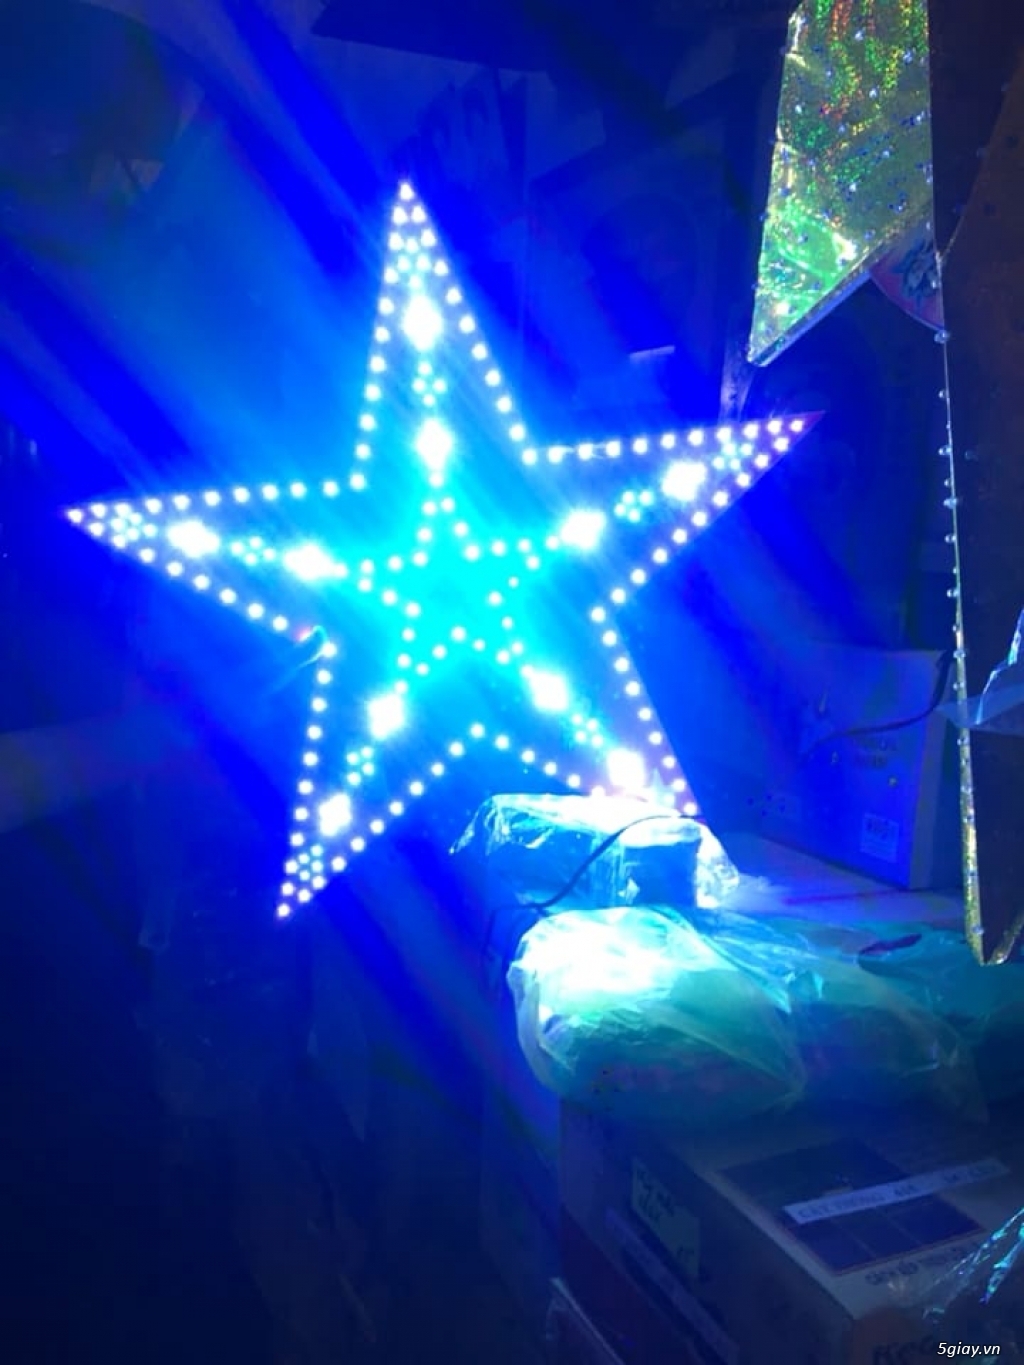 Cung cấp đèn led ngôi sao Giáng sinh, Noel | 5giay